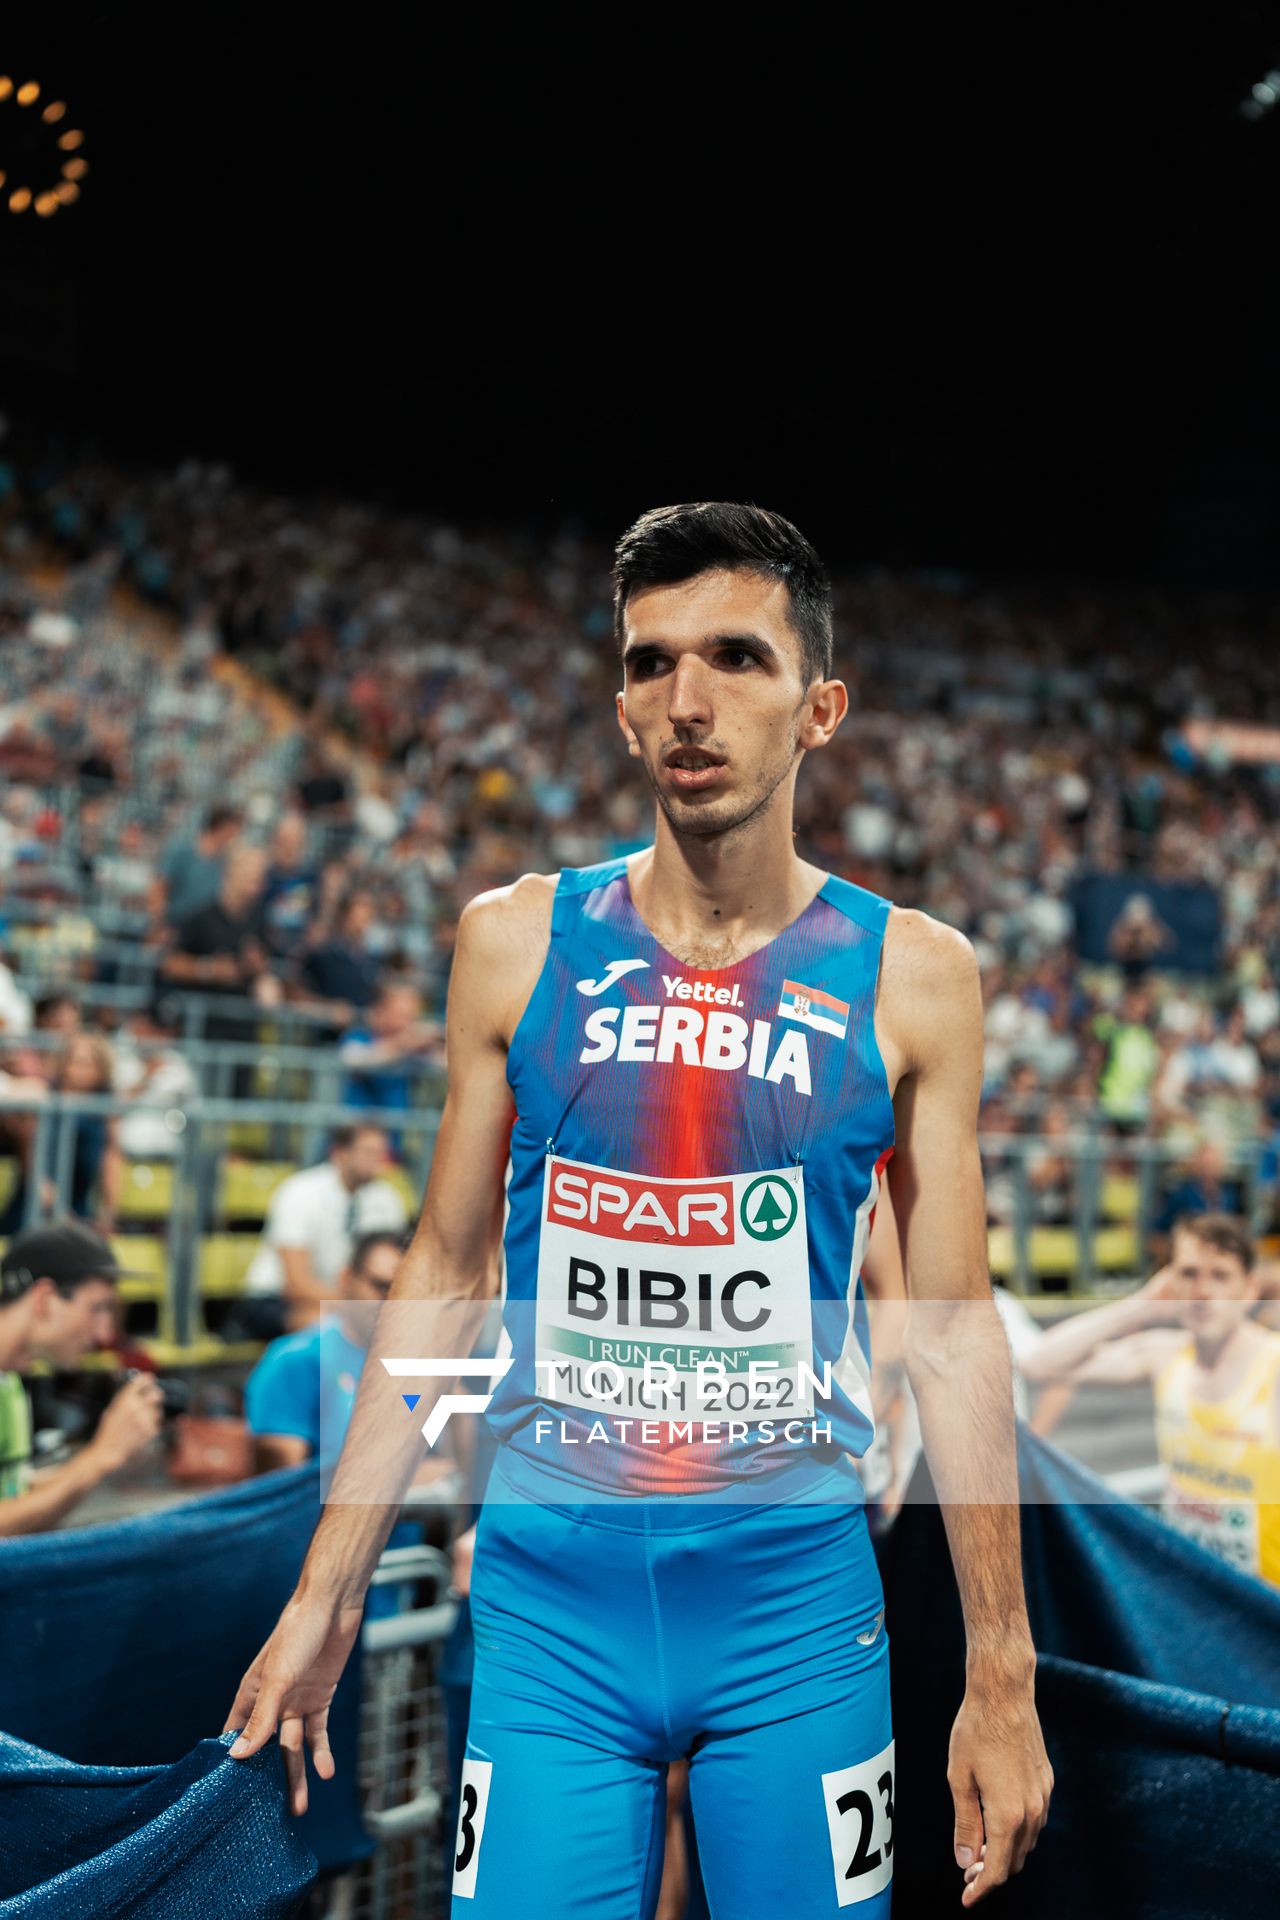 Elzan Bibic (SRB) im 5000m Finale am 16.08.2022 bei den Leichtathletik-Europameisterschaften in Muenchen